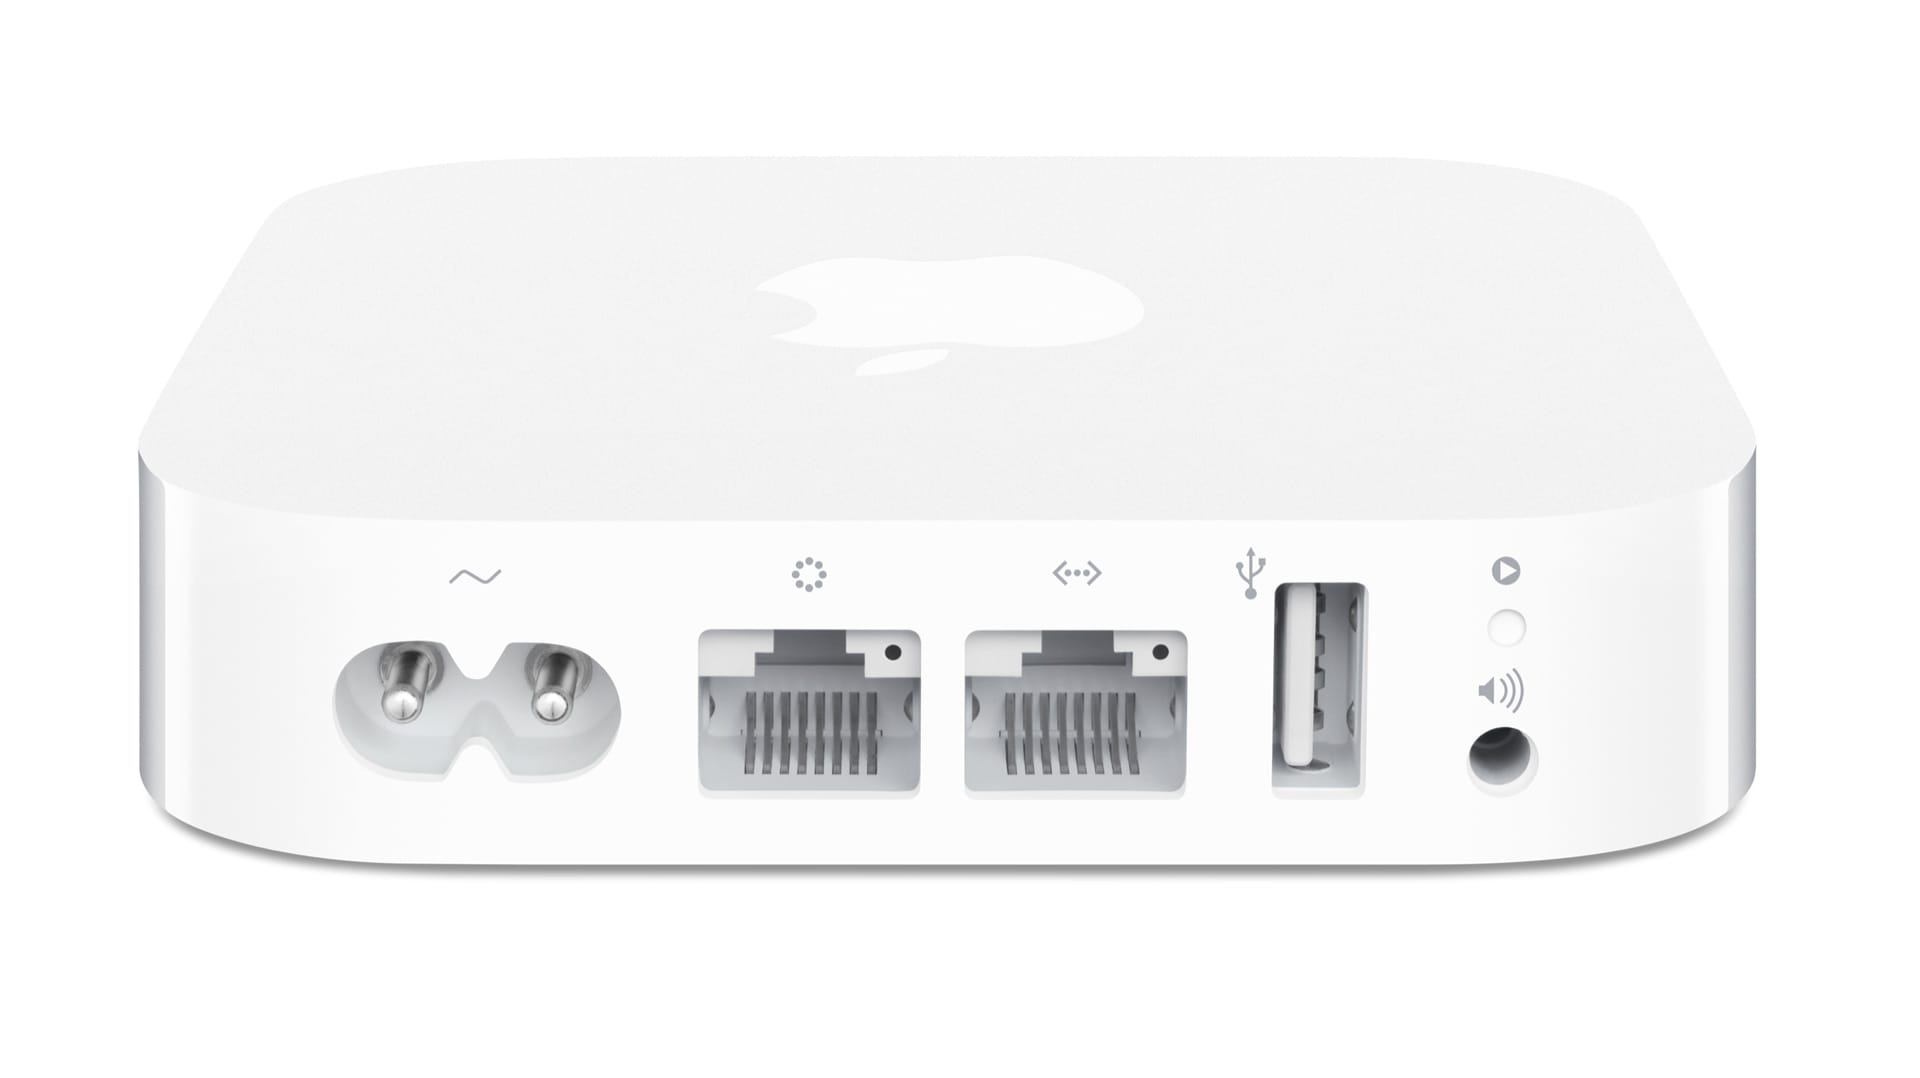 Apple AirPort Express ist eigentlich gemacht, um den WLAN-Empfang im eigenen Haus zu verbessern. Doch der Repeater lässt sich auch mit Lautsprechern oder der Stereoanlage verbinden. Musik lässt sich so über Airplay vom iPhone oder über das WLAN von Macs und WIndows-PCs aus streamen. AirPort Express kostet etwa 100 Euro.